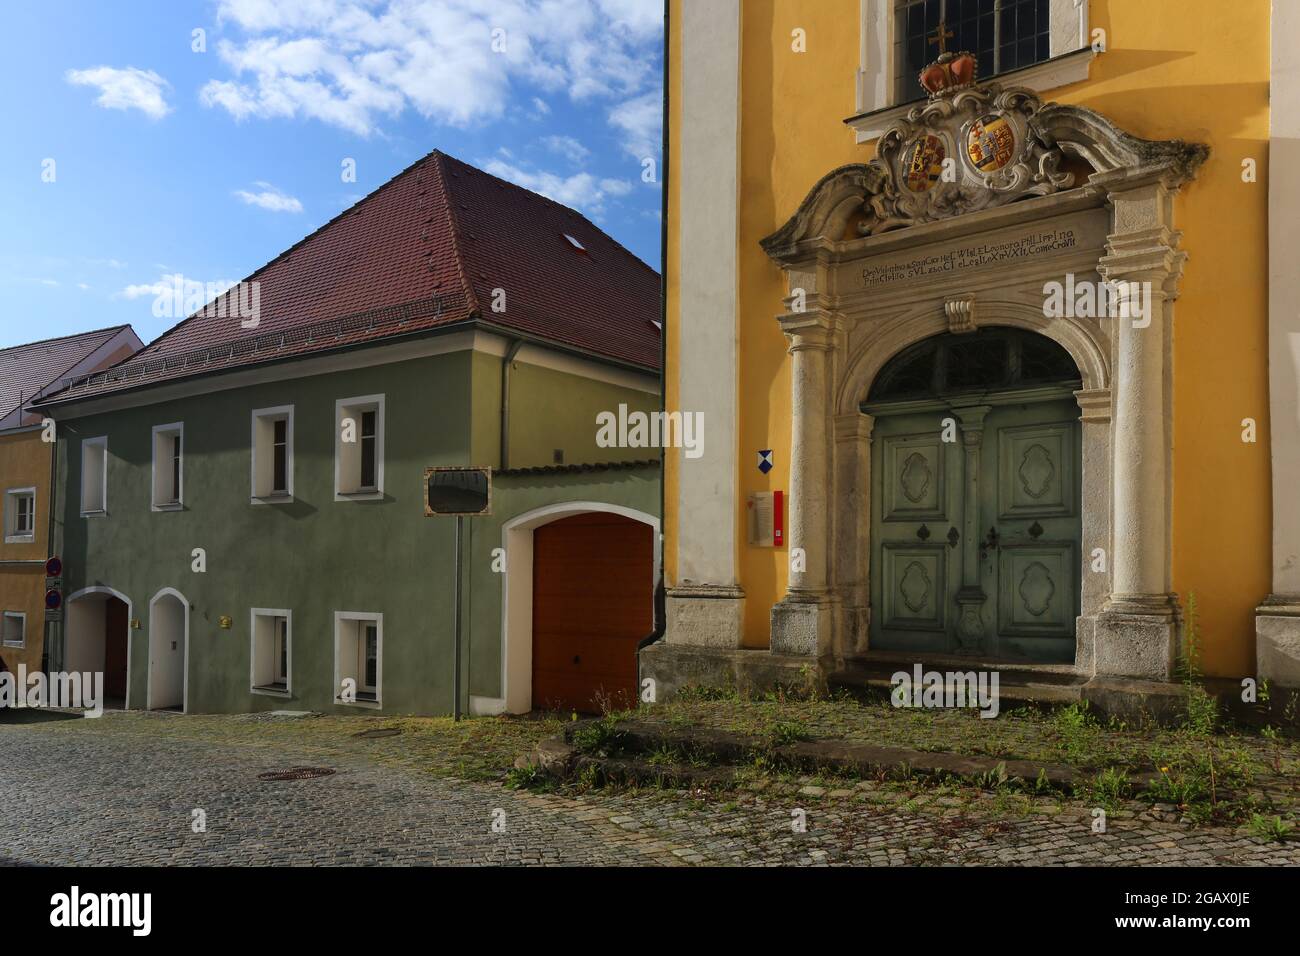 Altstadt oder Innenstadt mit historischen Kloster oder Kirche mit Eingangsportal dramatischen Wolken in Sulzbach Rosenberg, Amberg, Oberpfalz, Bayern! Foto de stock